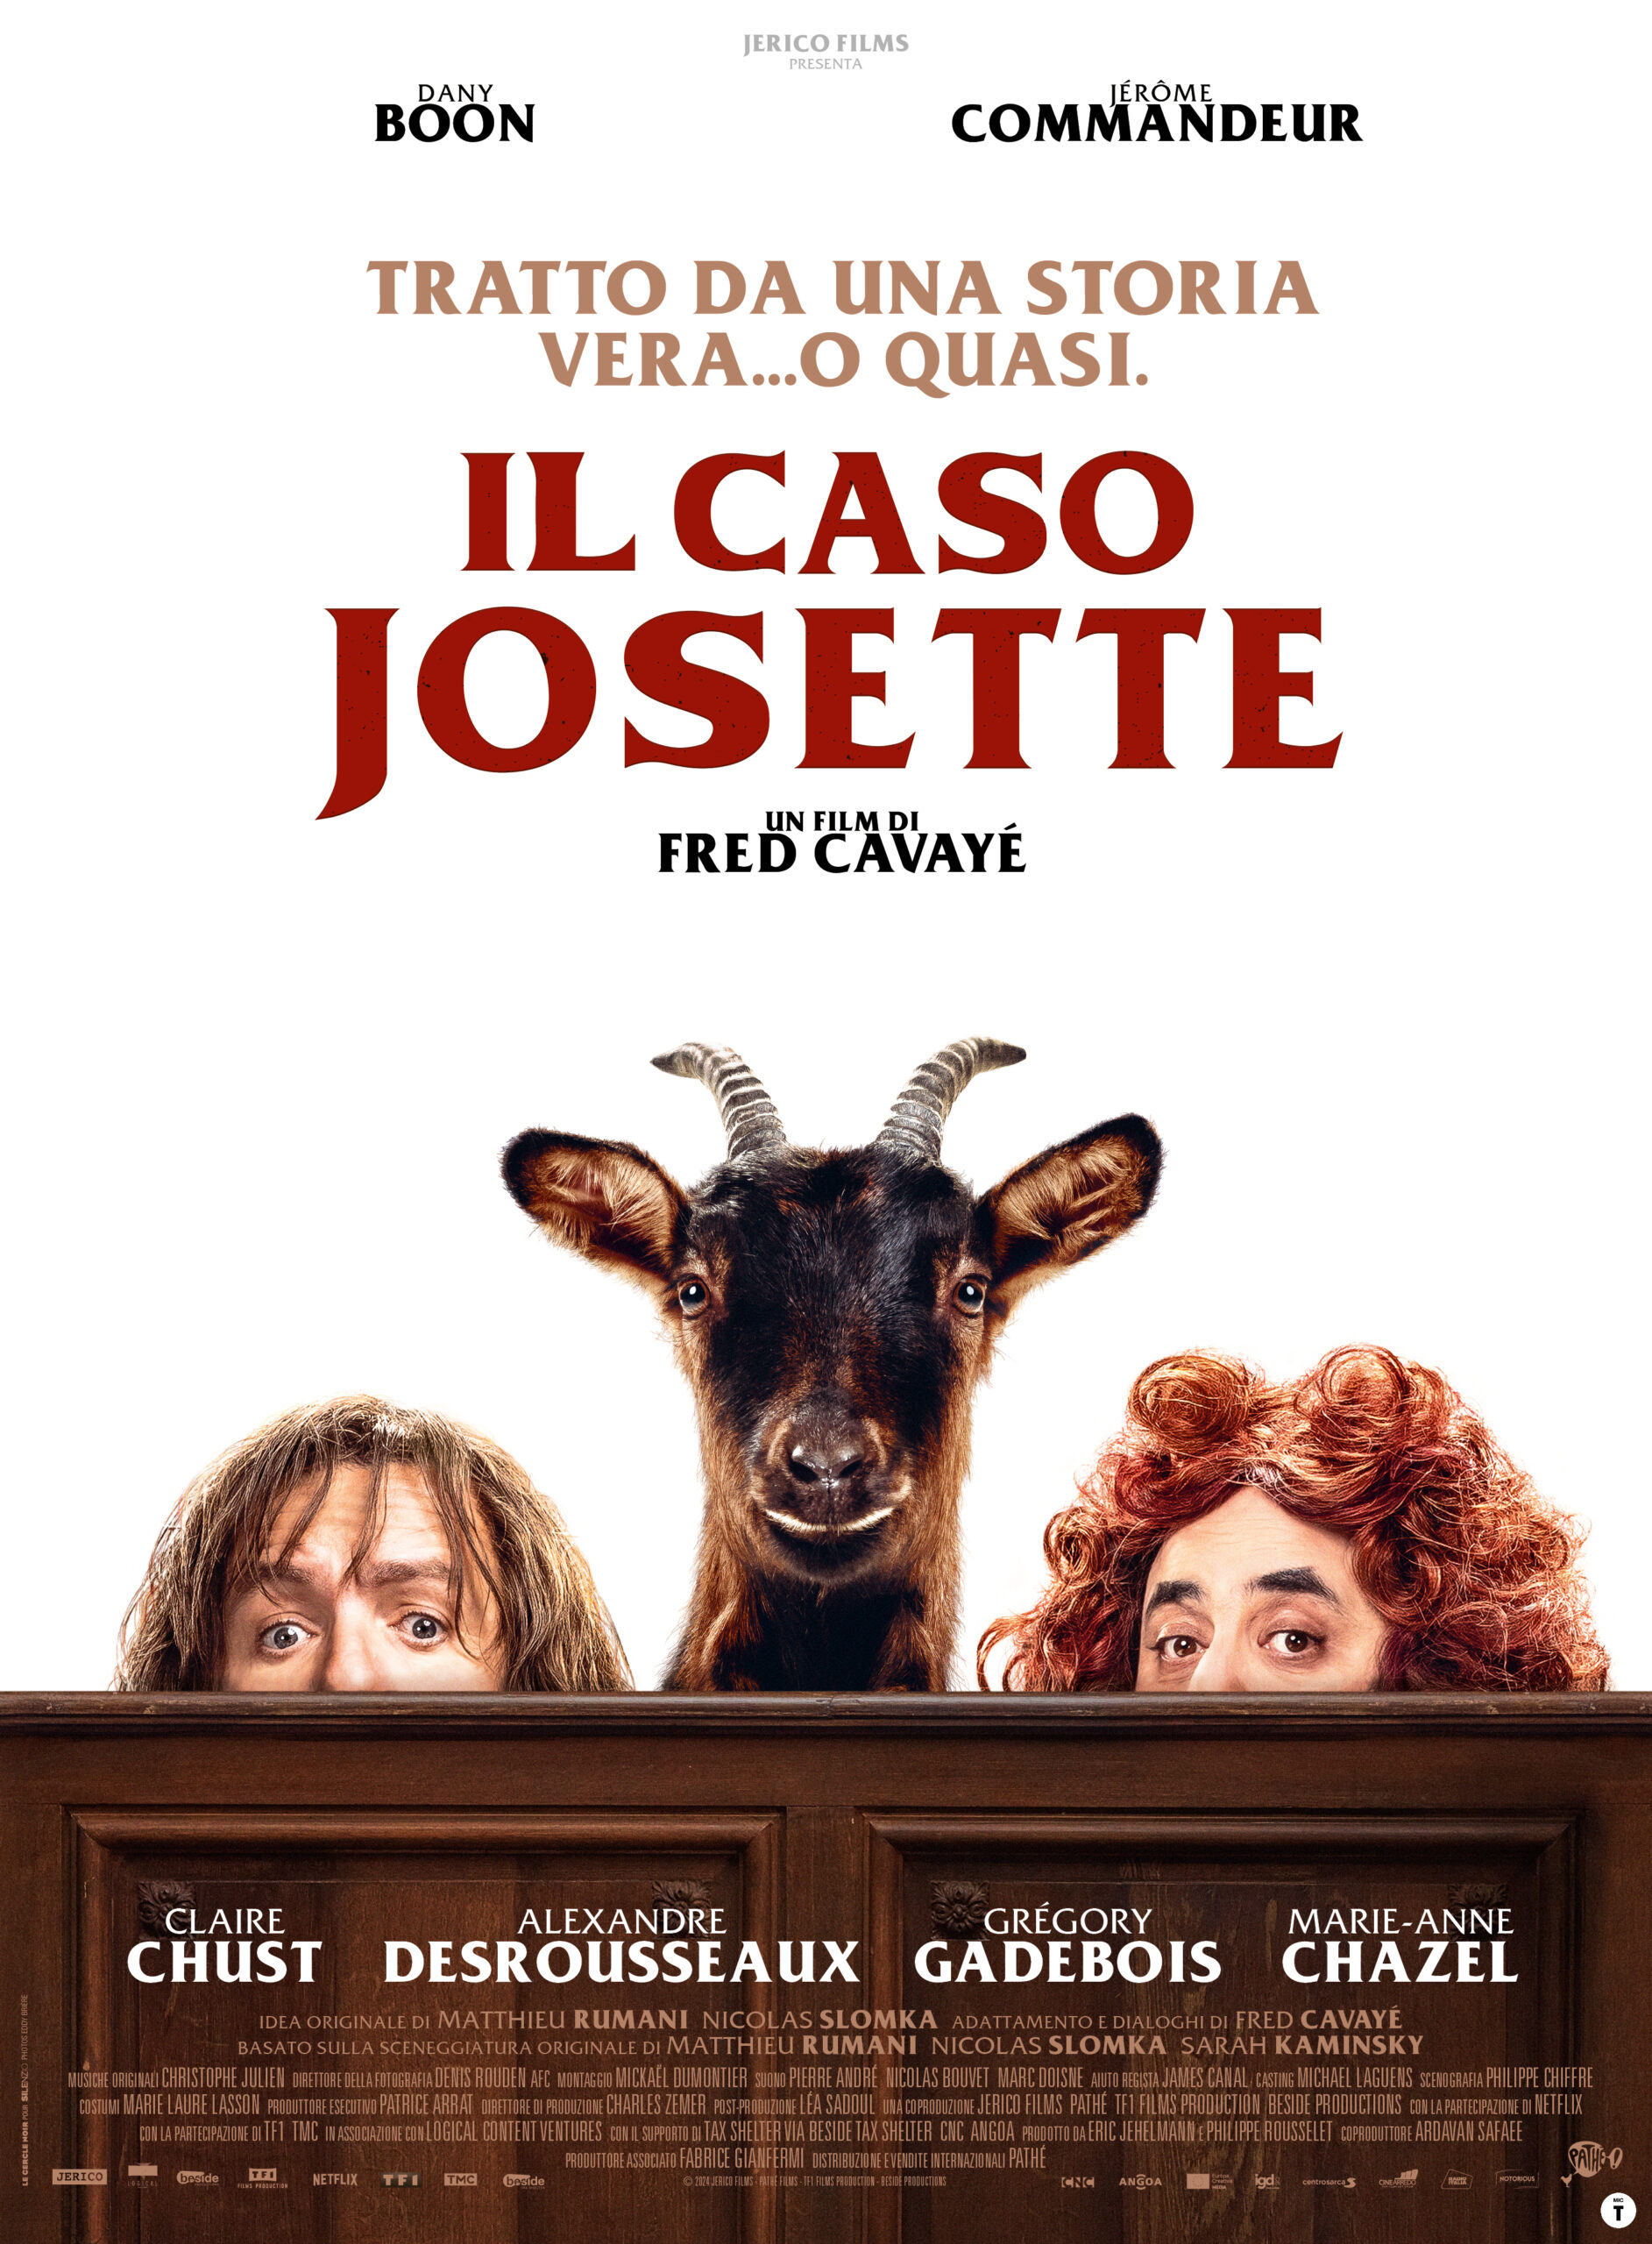 Dal 24 aprile 2024 nei cinema italiani con Notorious Pictures Il caso Josette, la commedia di Fred Cavayé con Dany Boon e Jérôme Commandeur.